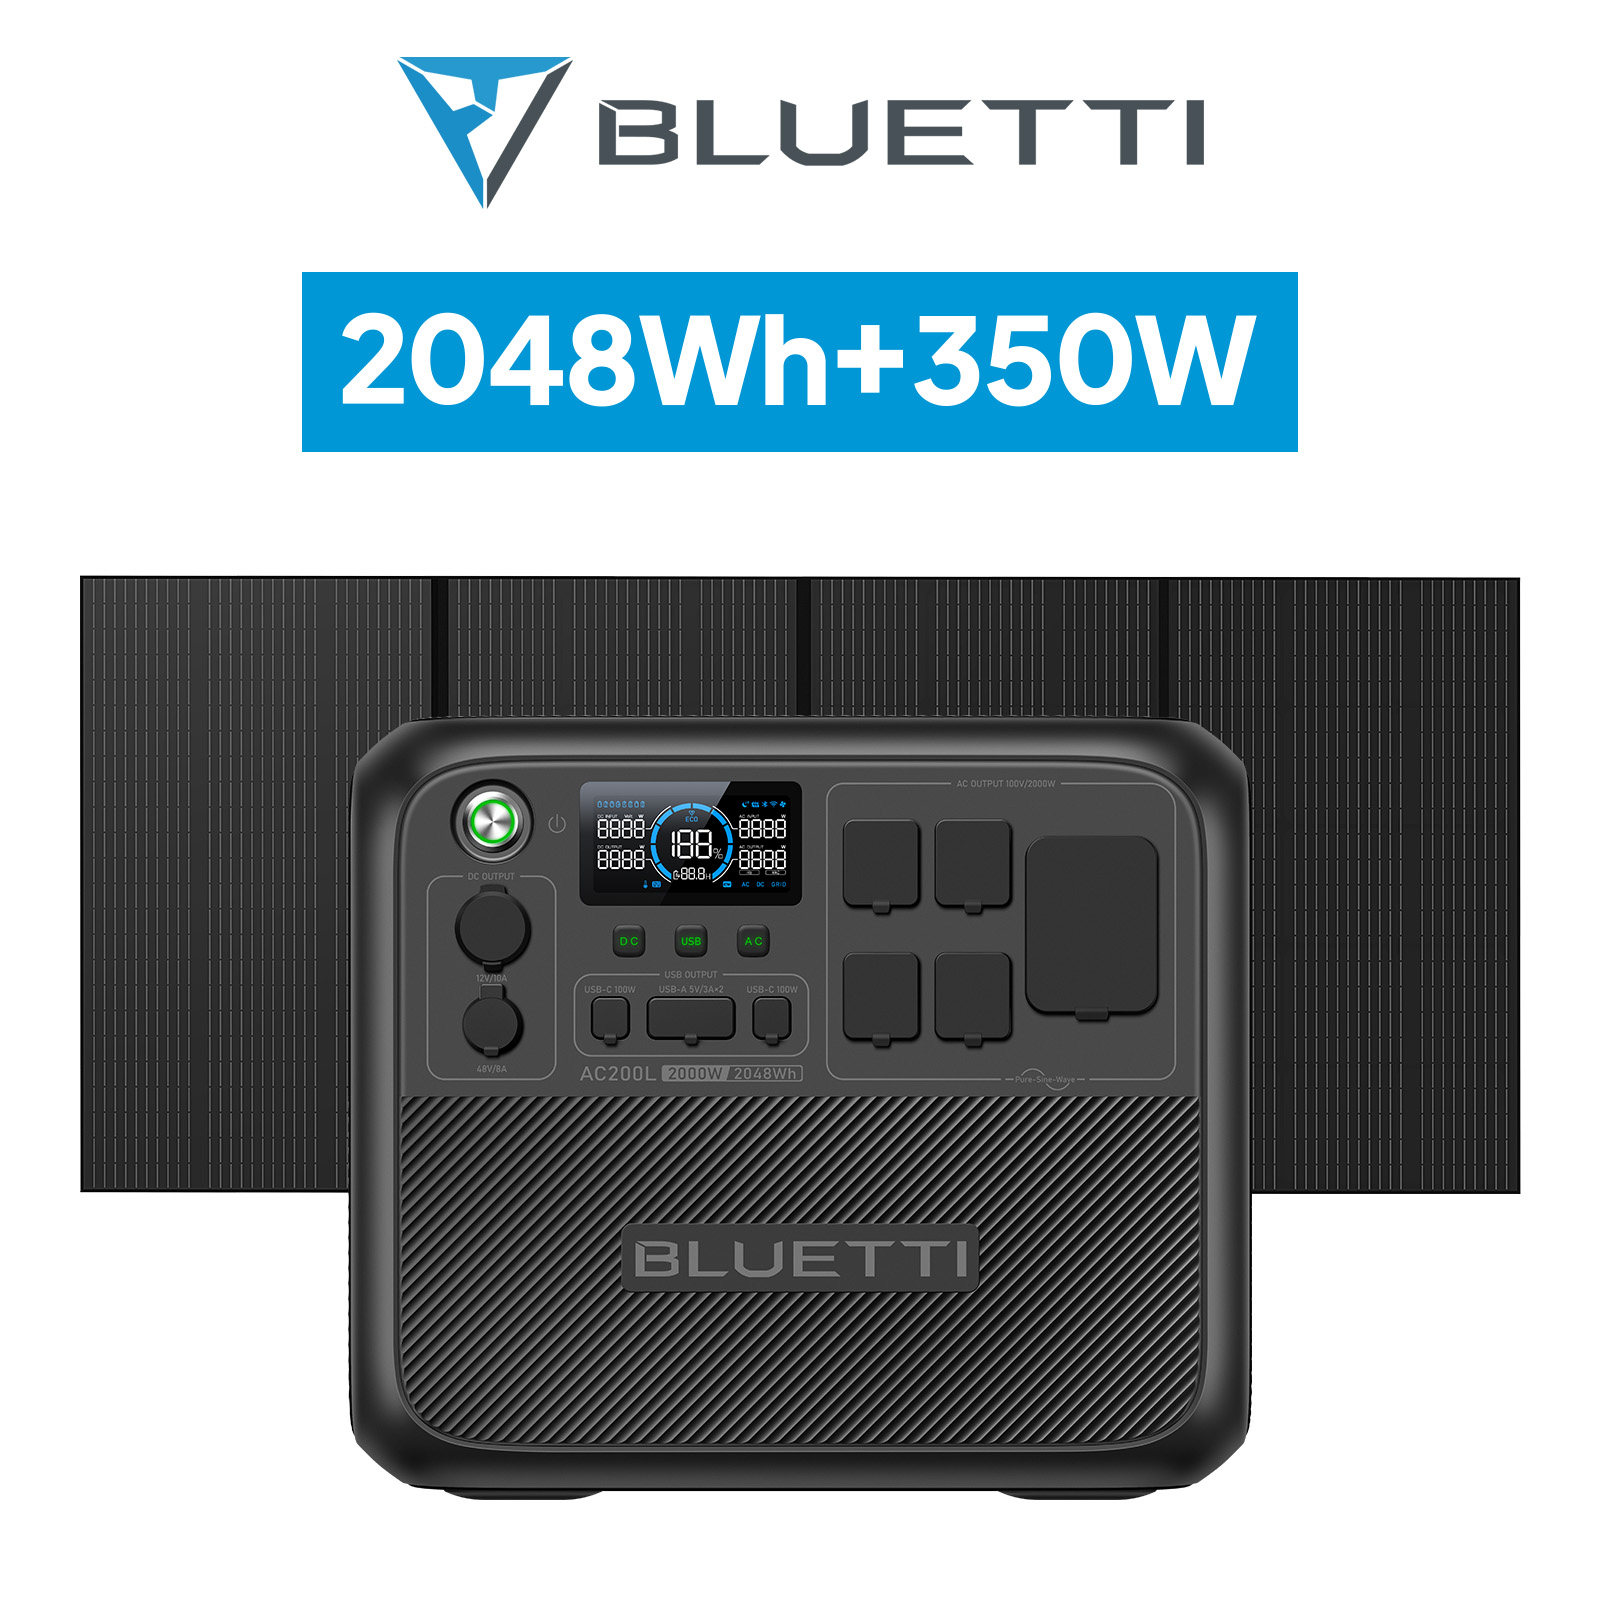 BLUETTI ポータブル電源 ソーラーパネル セット AC200L+PV350 2048Wh+